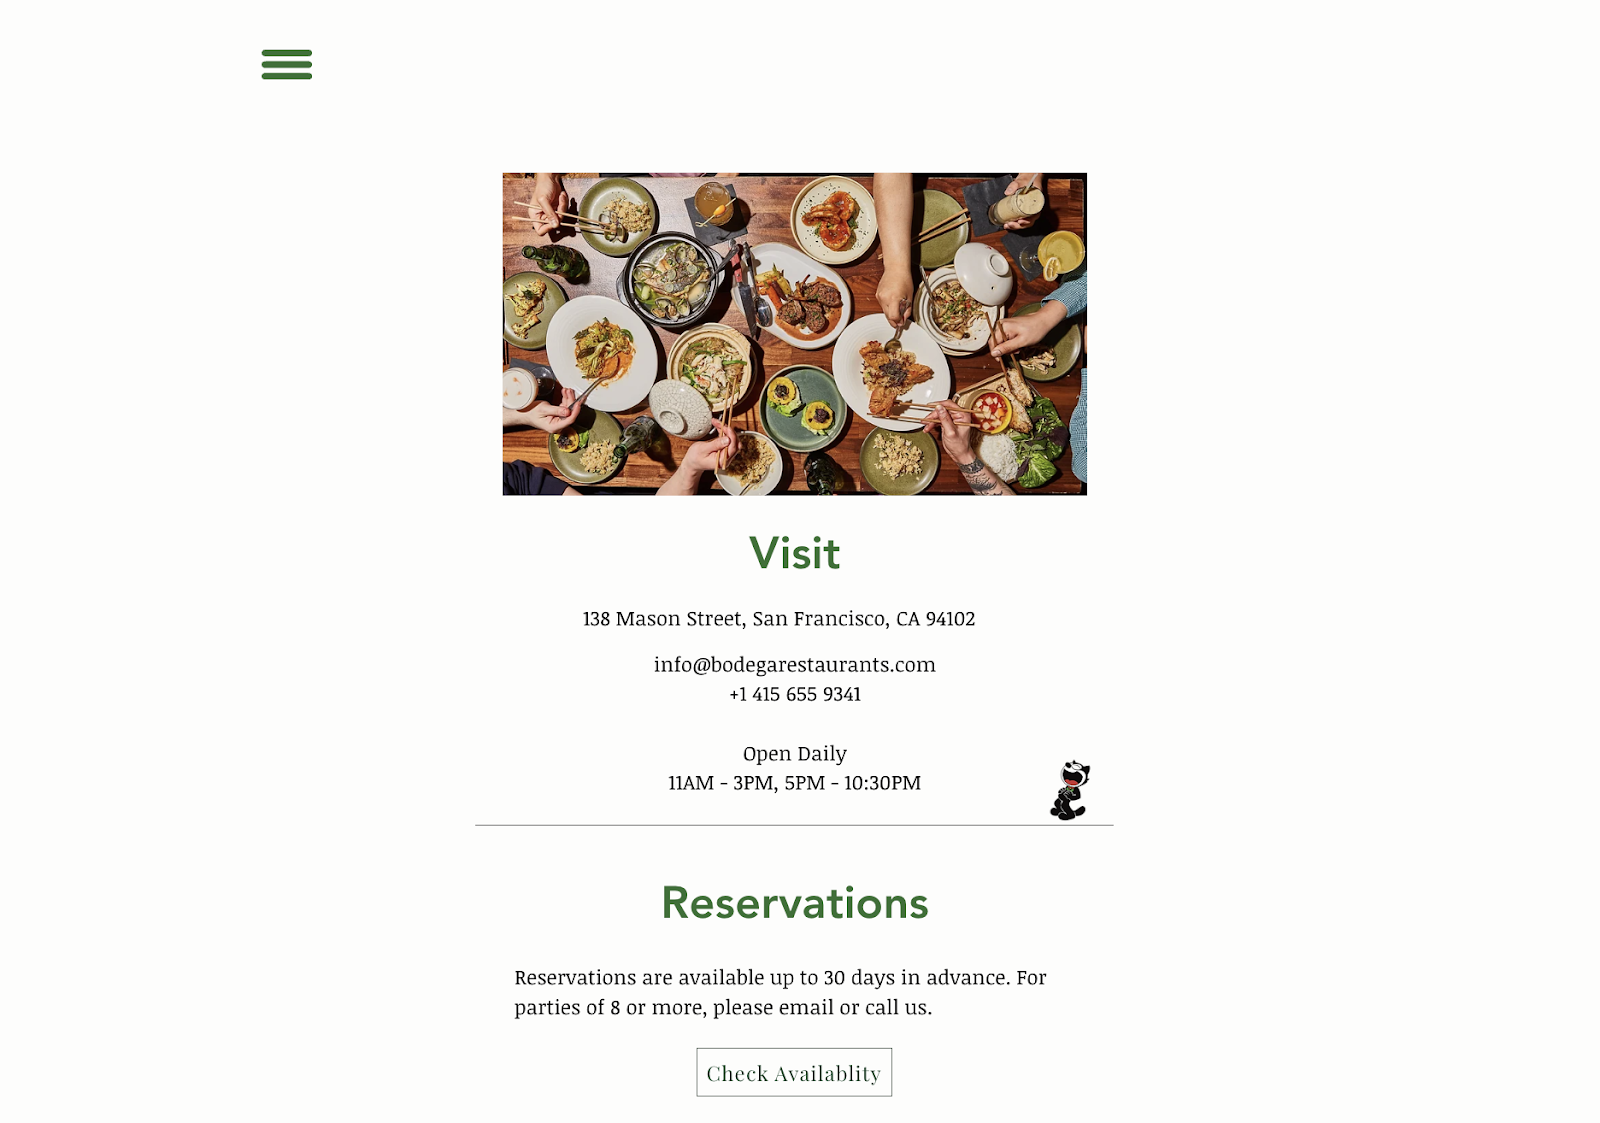 Ідеї ​​ресторанного маркетингу: простий веб-сайт для ресторану Bodega у Сан-Франциско. Веб-сторінка містить контактну інформацію, години роботи та посилання для бронювання.